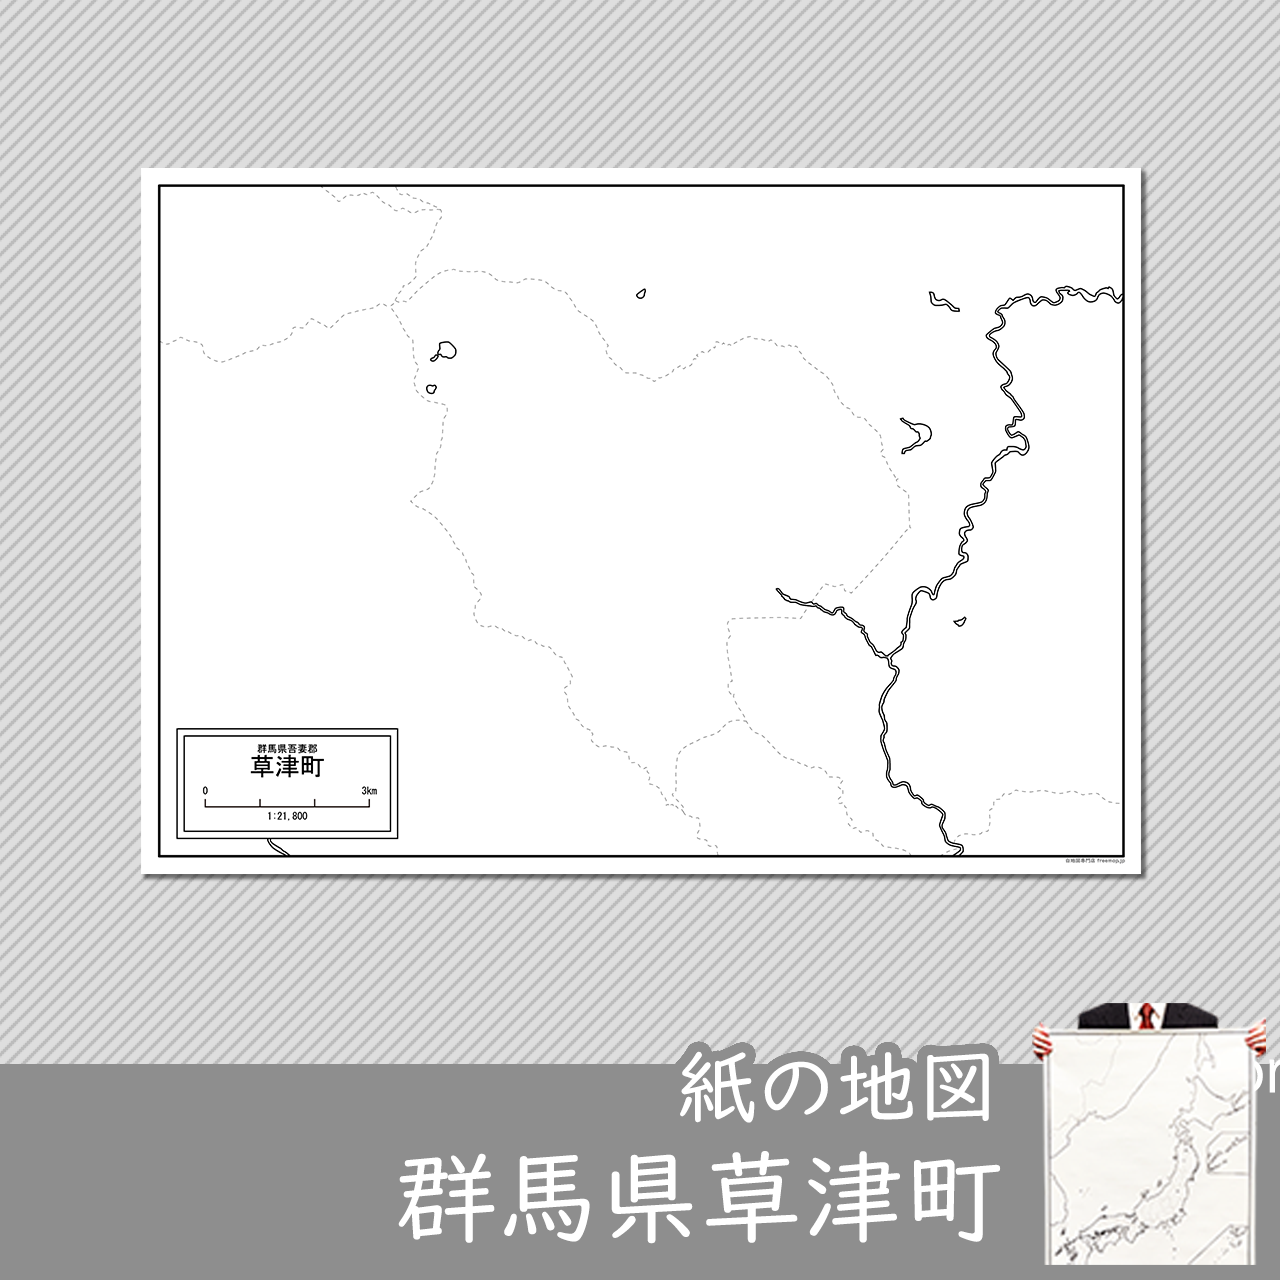 草津町の紙の白地図のサムネイル